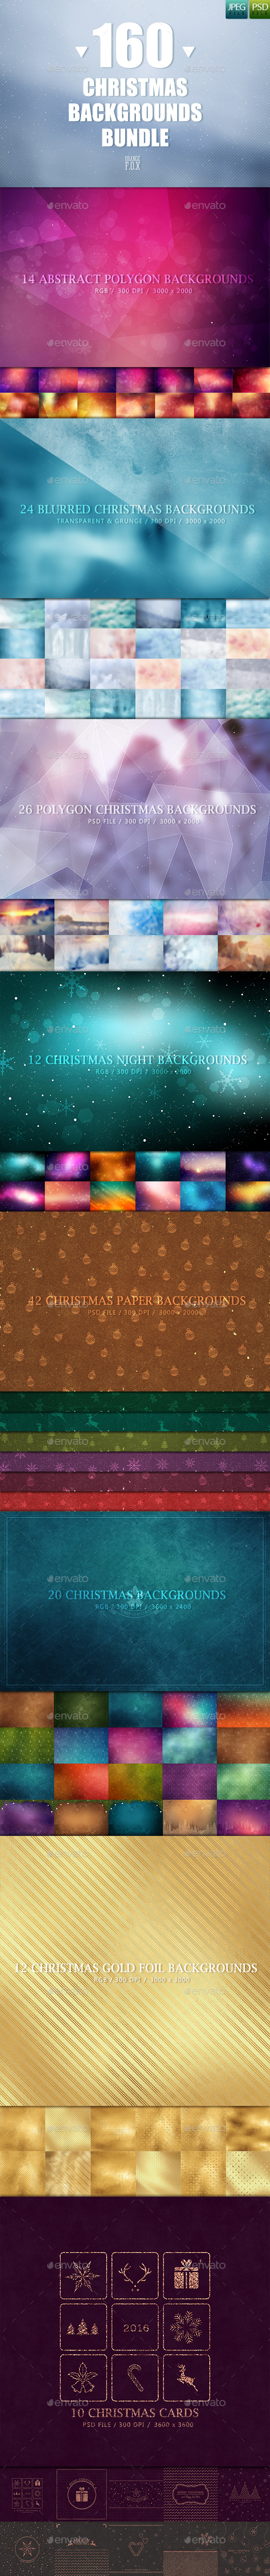 160 Christmas Backgrounds Bundle